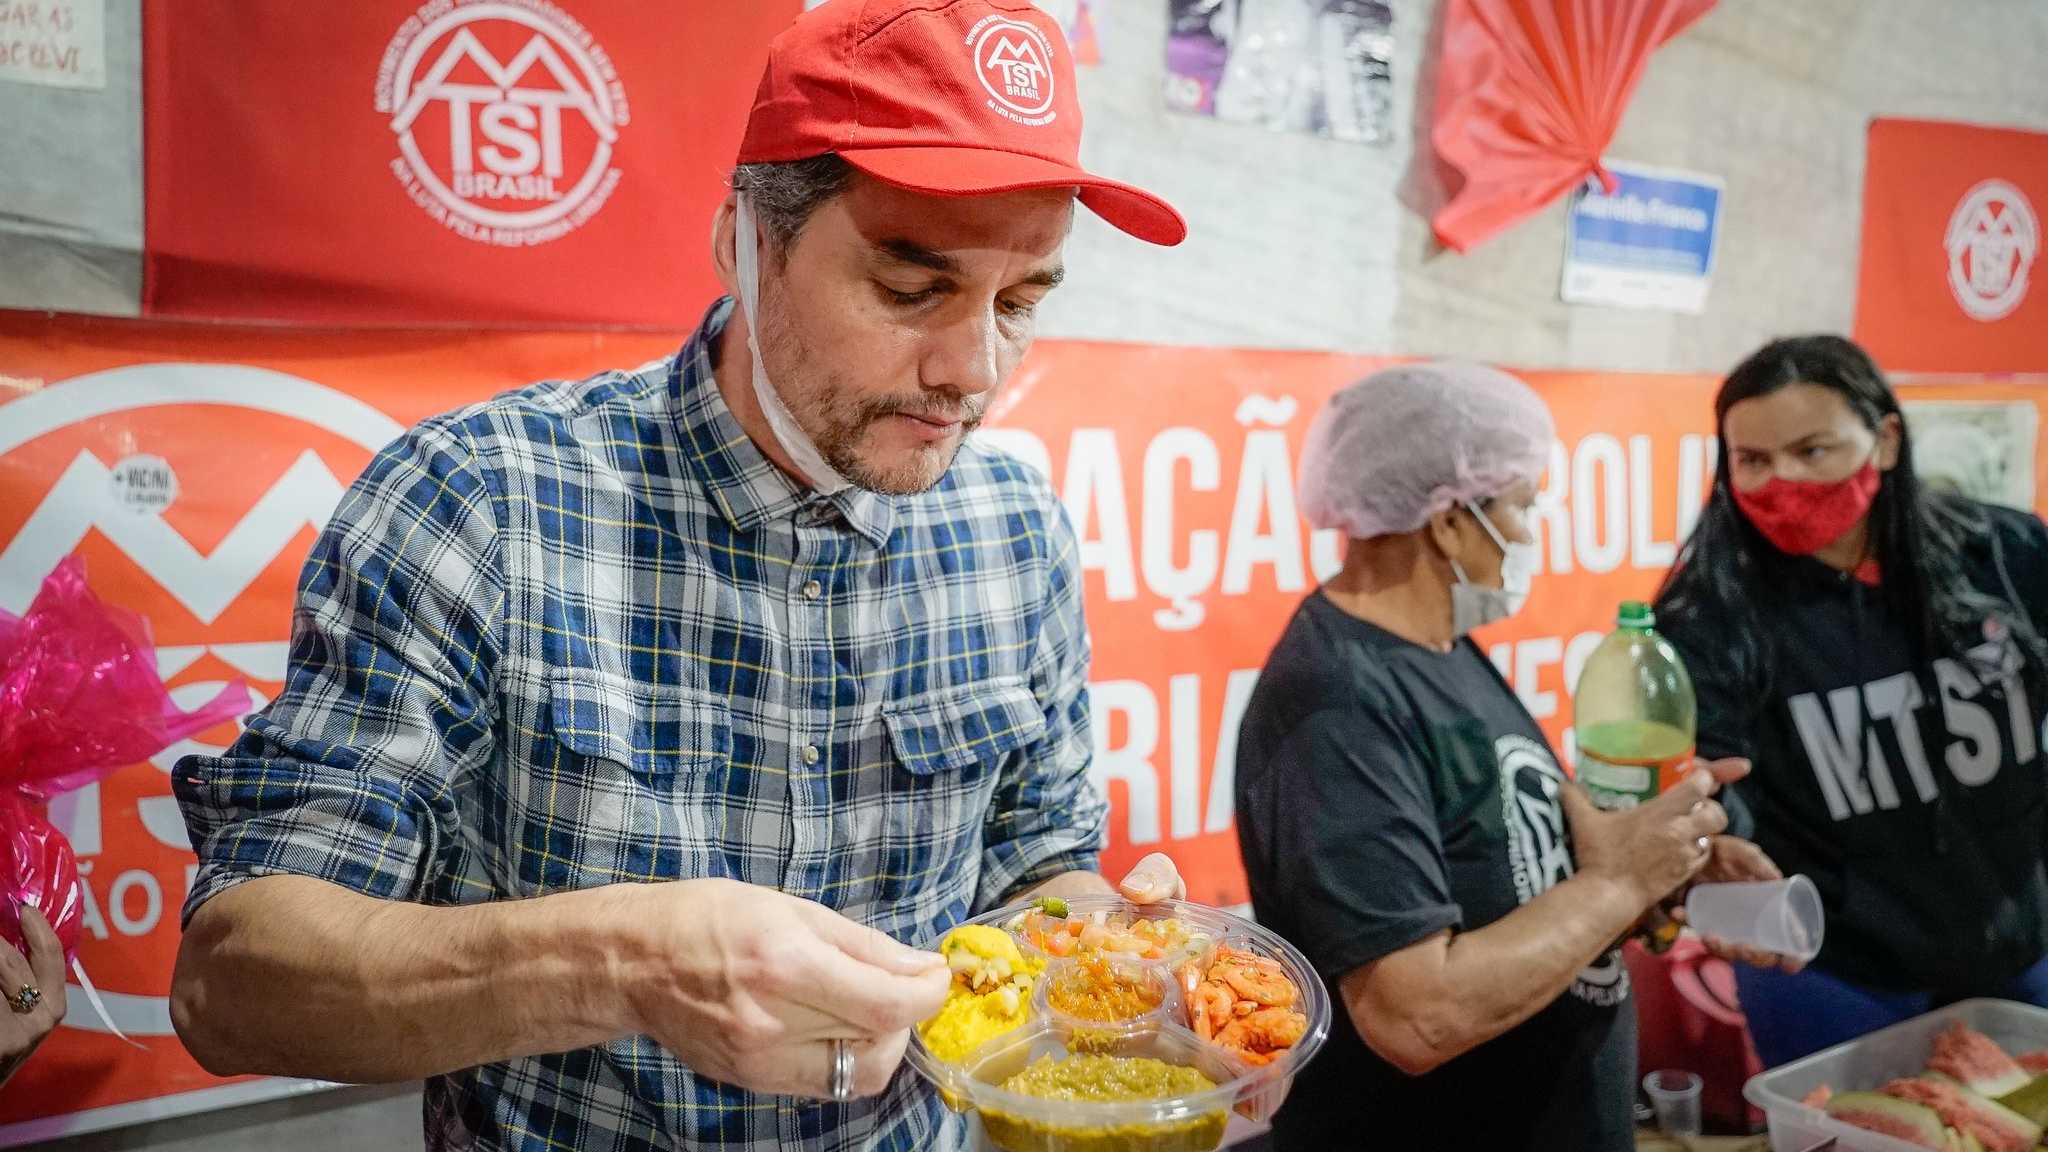 Wagner Moura gera polêmica após publicação de foto comendo camarão em  evento do MTST - ISTOÉ Independente